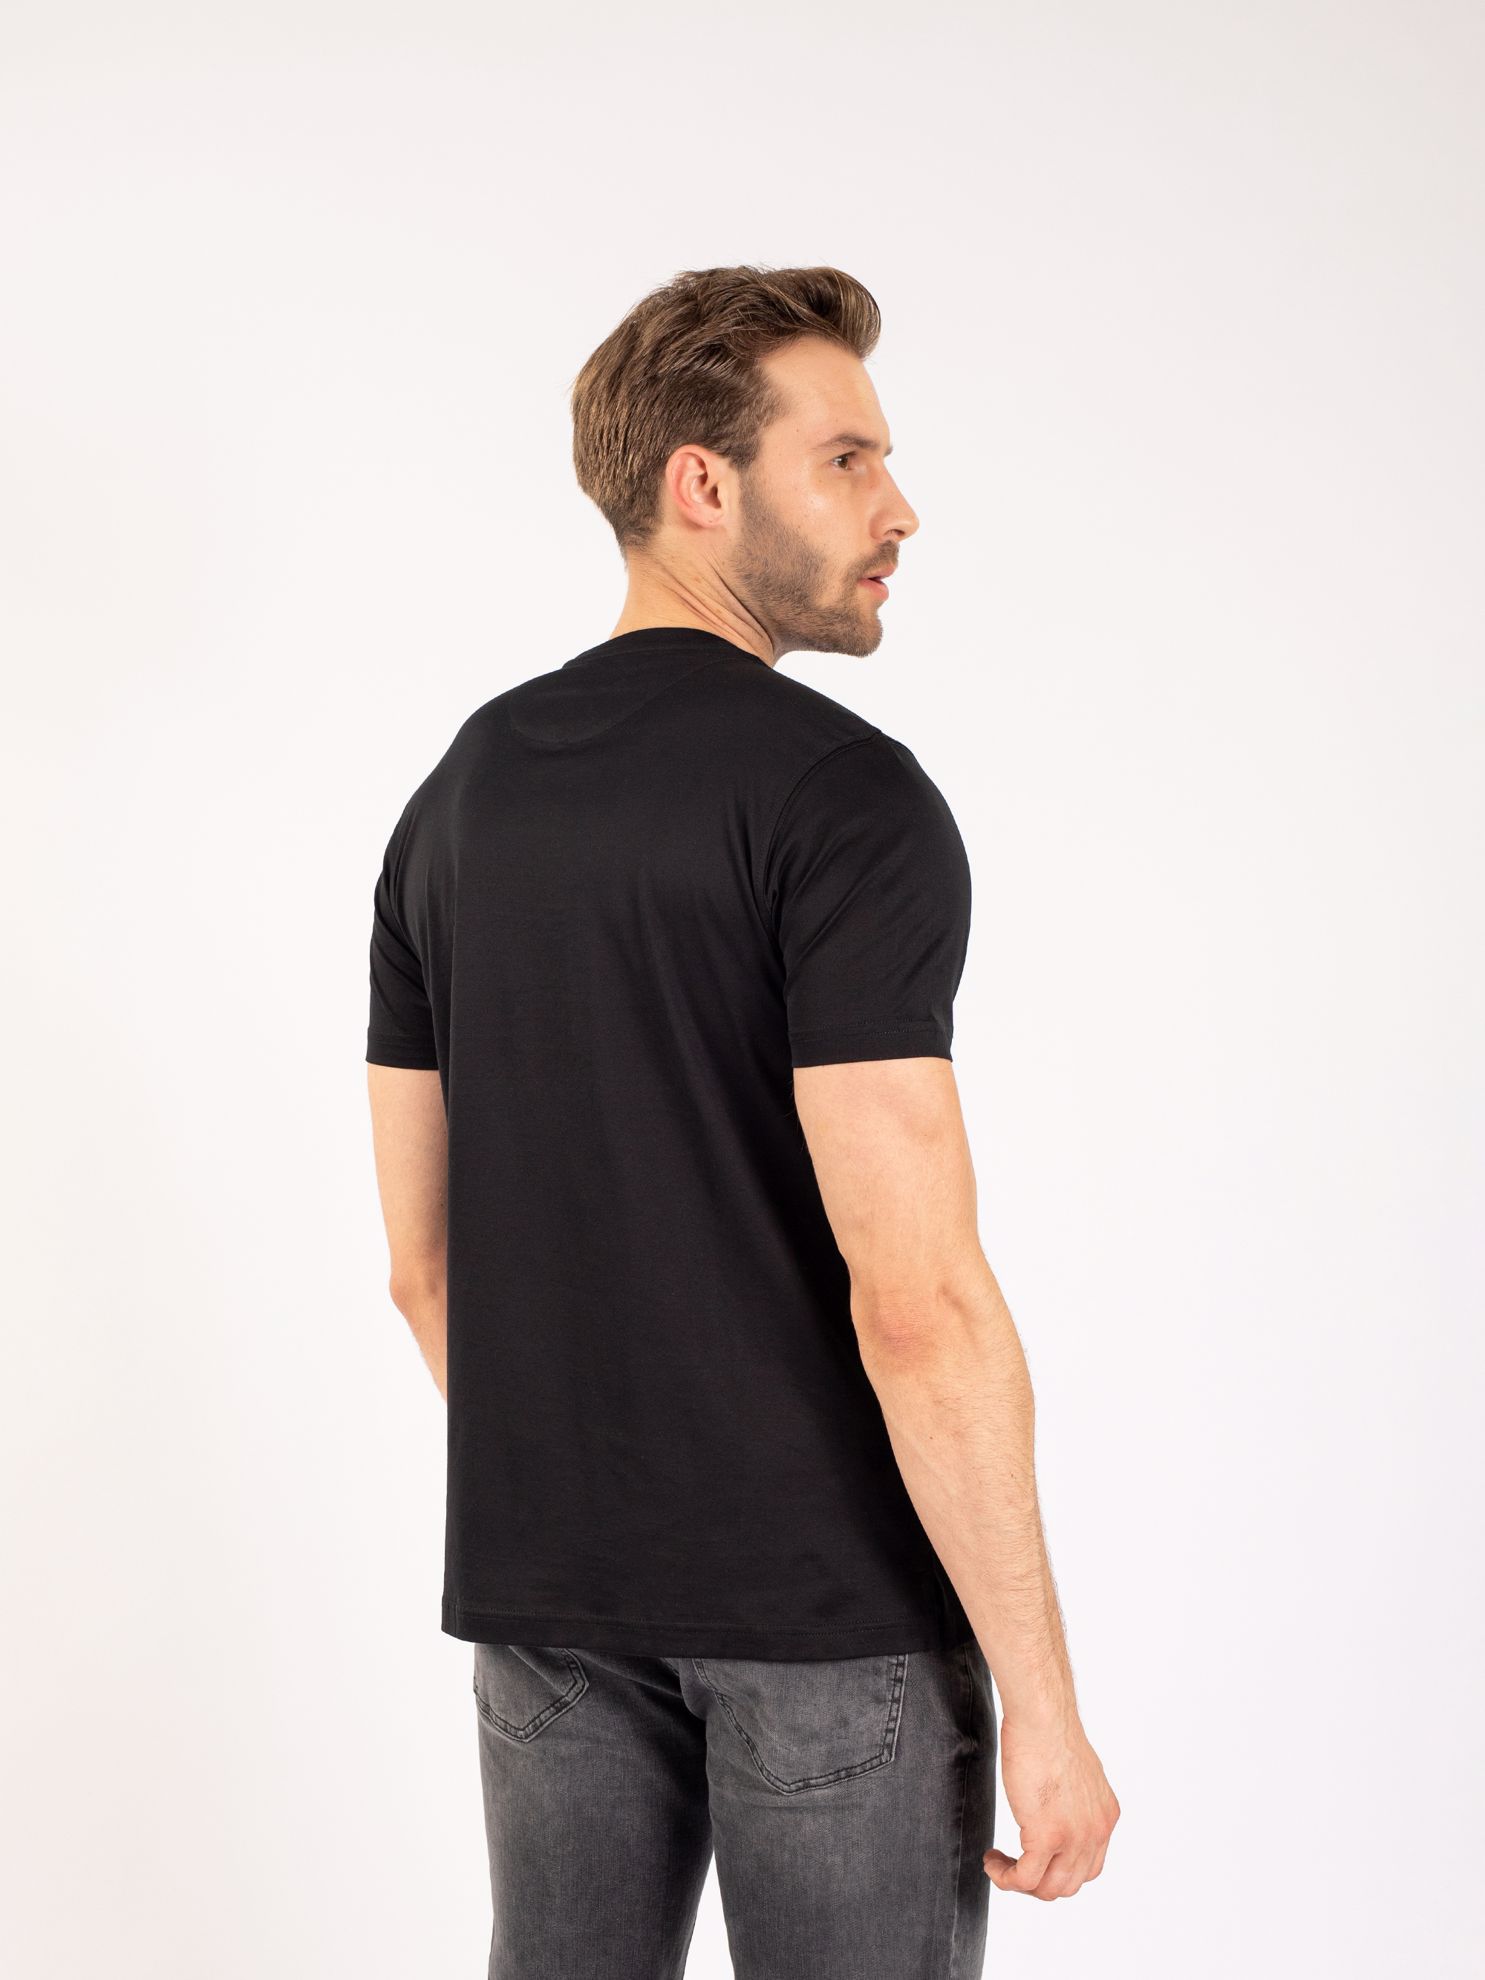 Karaca Erkek Slim Fit Tişört-Siyah. ürün görseli